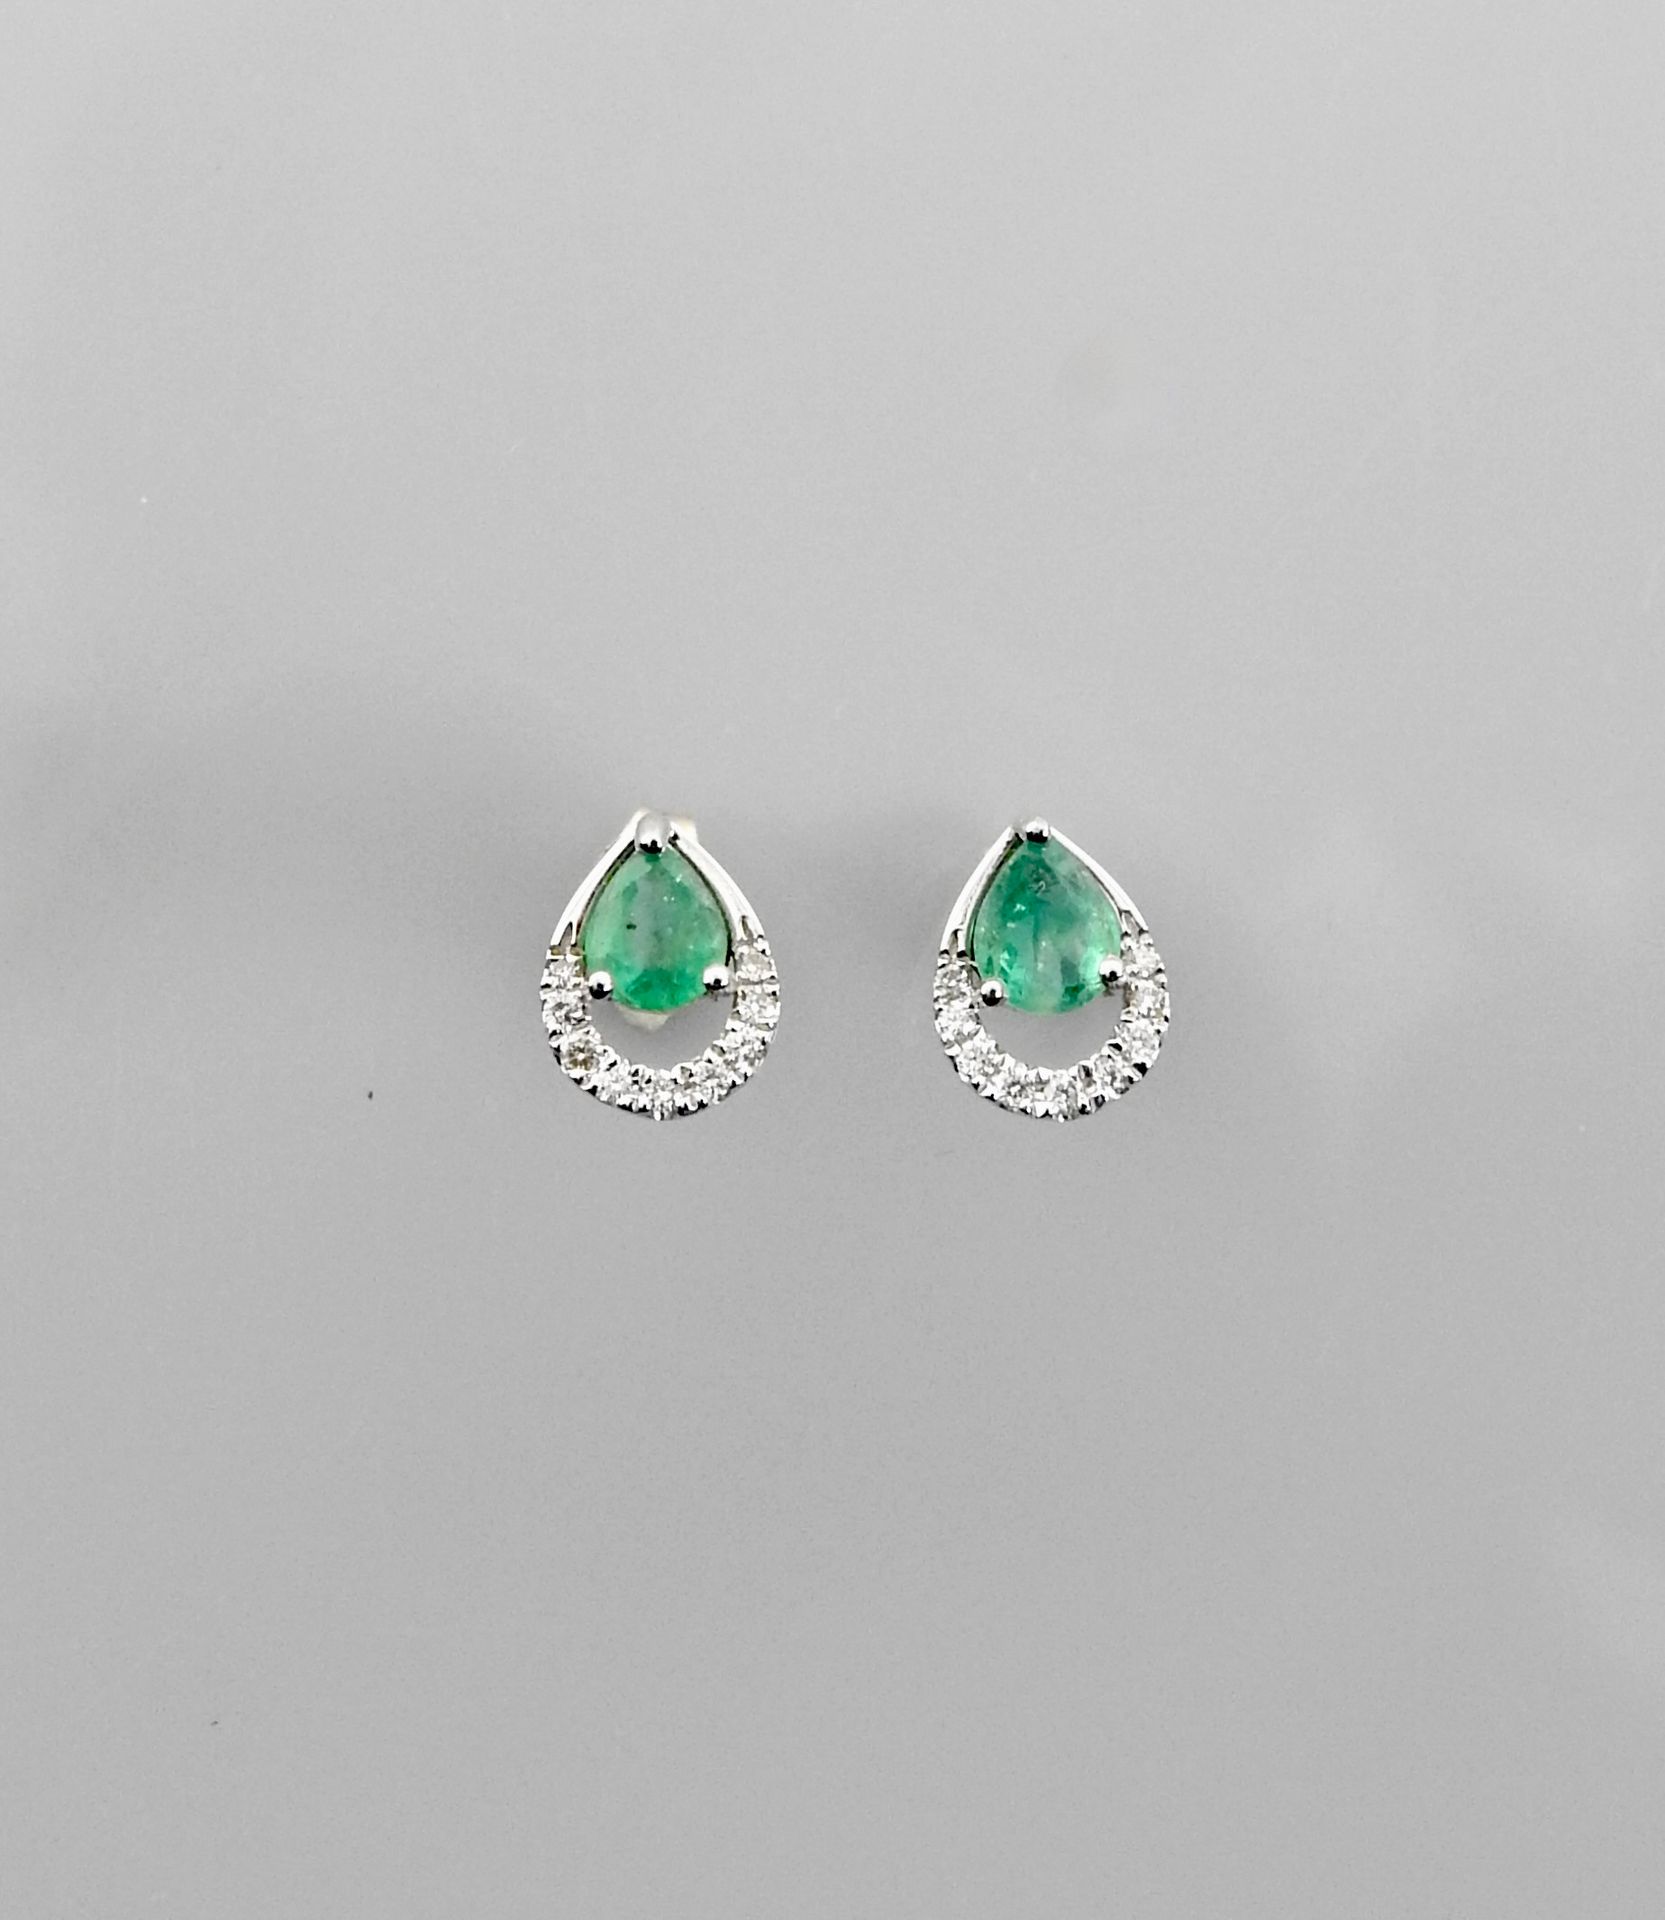 Null 白金耳环，750毫米，每只耳环都镶有一颗梨形切割的祖母绿，边缘镶有钻石，重量：1.35克，毛重。